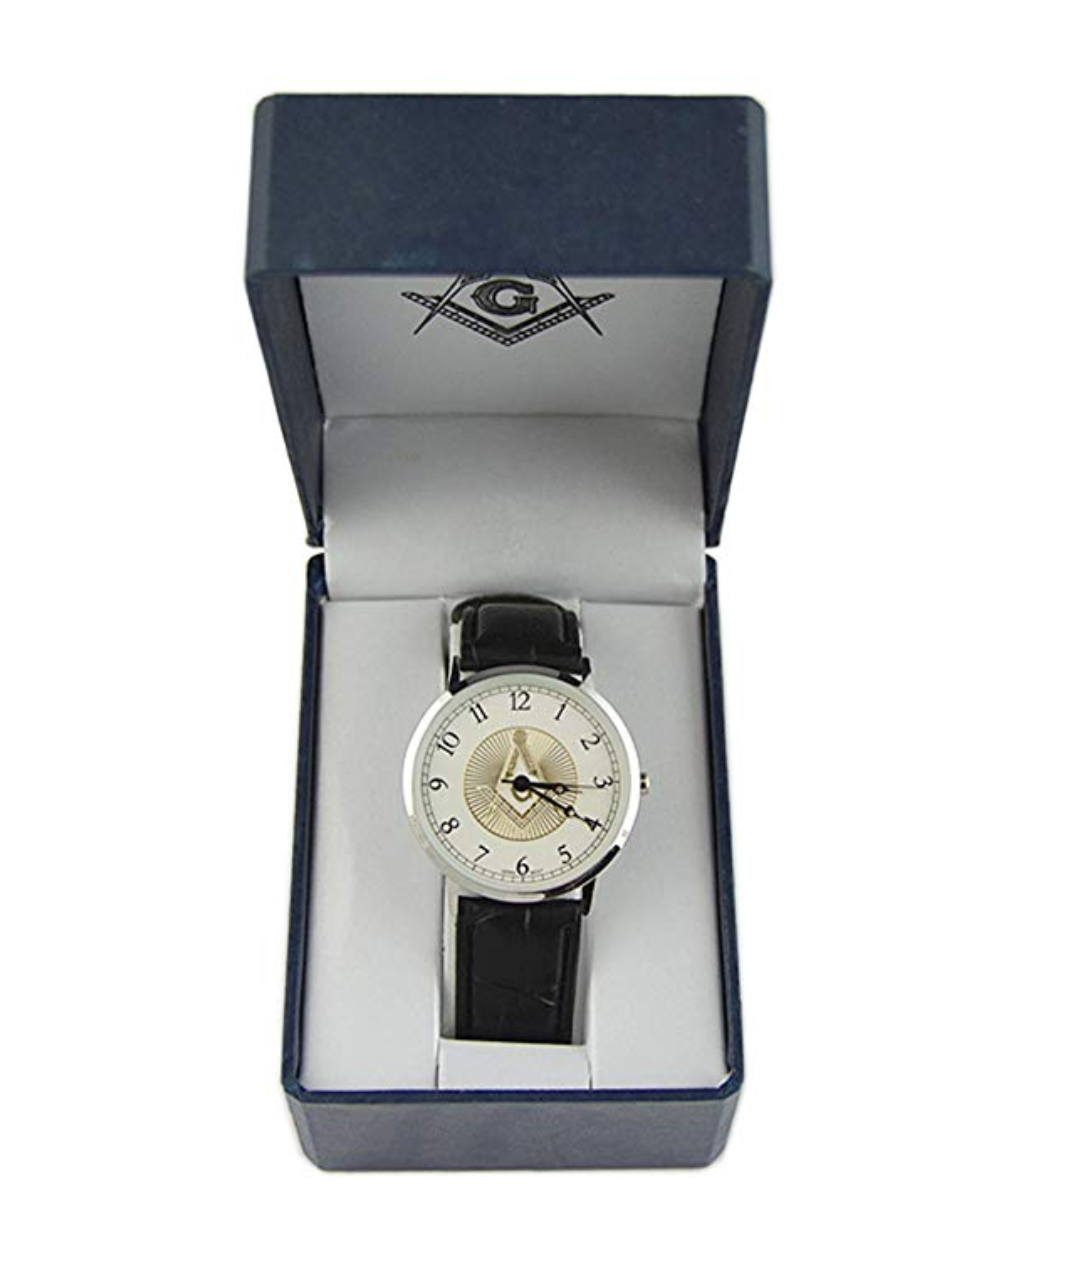 Freemason Watch Masonic Regalia Jewelry Black Leather Band Gold Compass & Square Gift Box